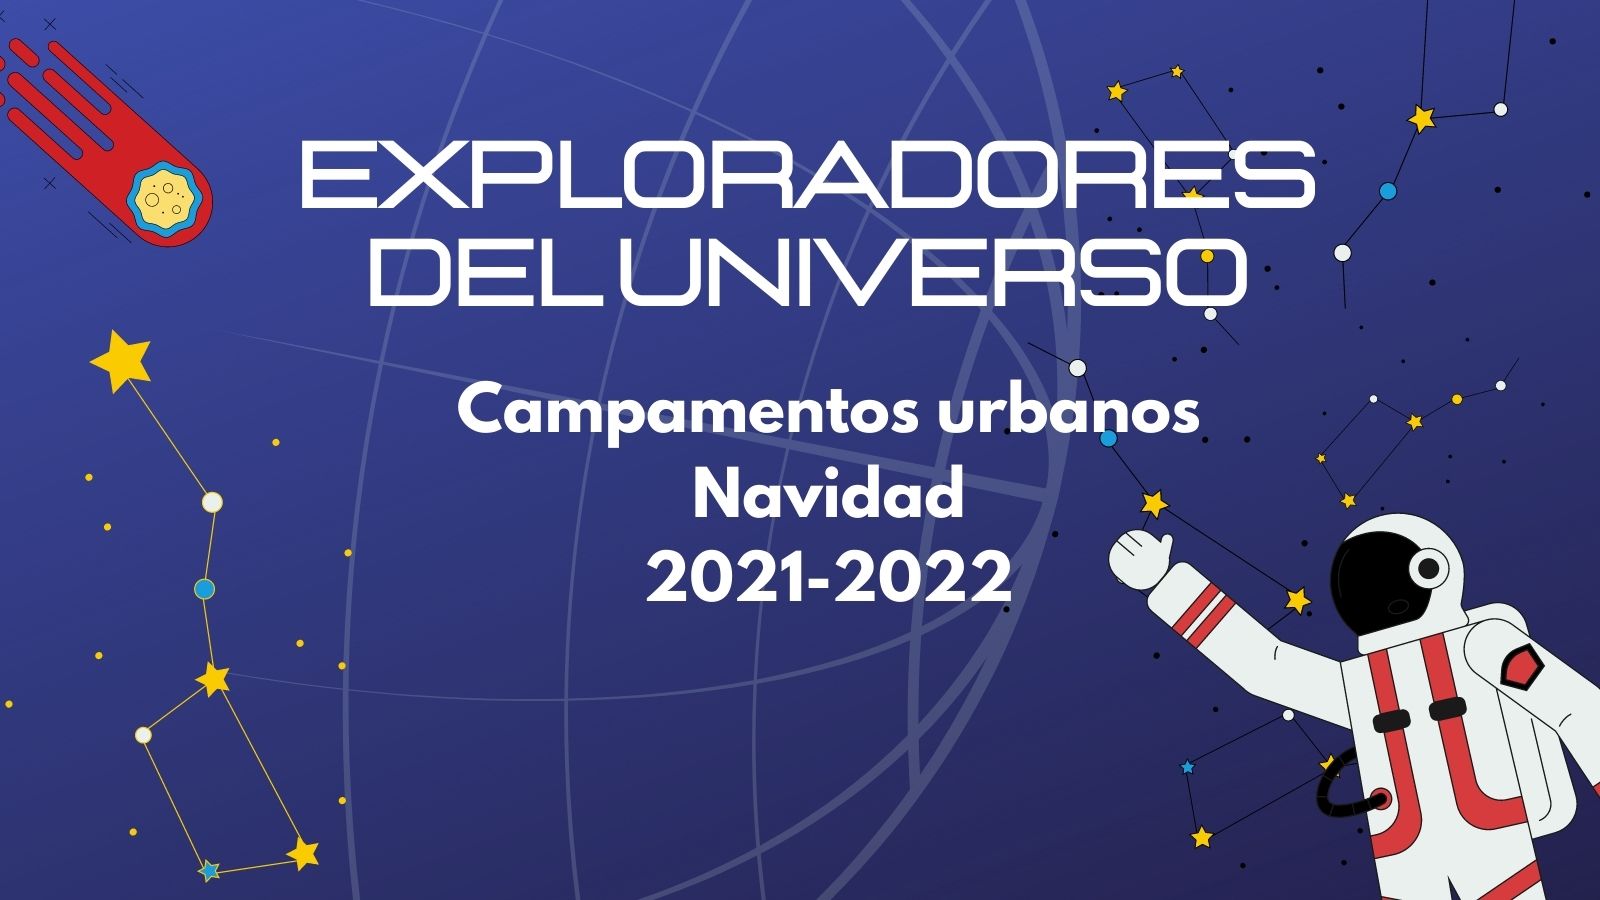 Campamentos Urbanos Navidad 2021-2022. “Exploradores del Universo”